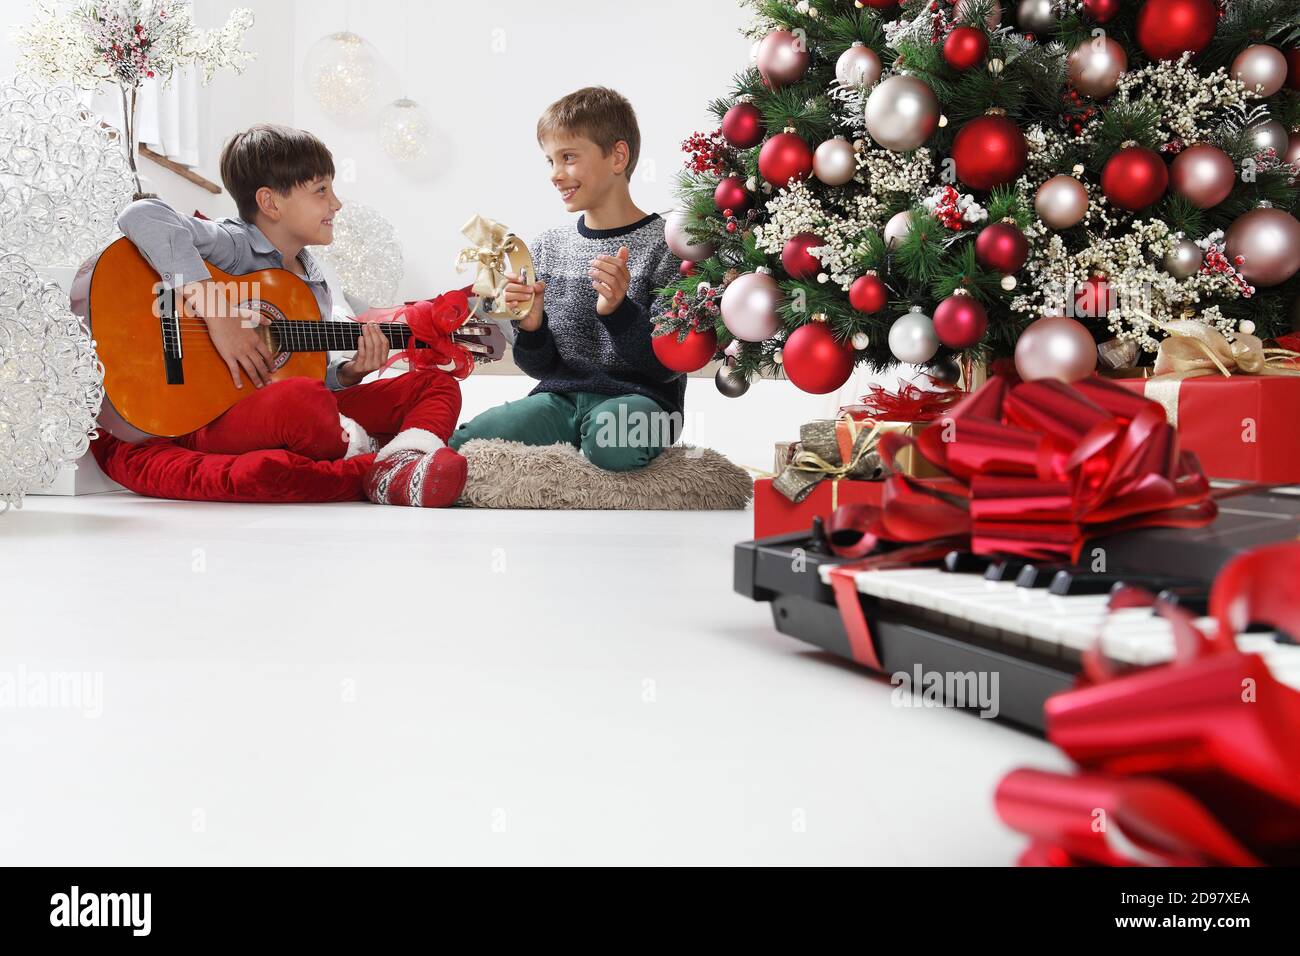 joyeux noël et joyeuses fêtes, les enfants jouent de la guitare et du  tambourin près de l'arbre de noël avec des paquets-cadeaux et des  instruments de musique emballés, à Photo Stock -